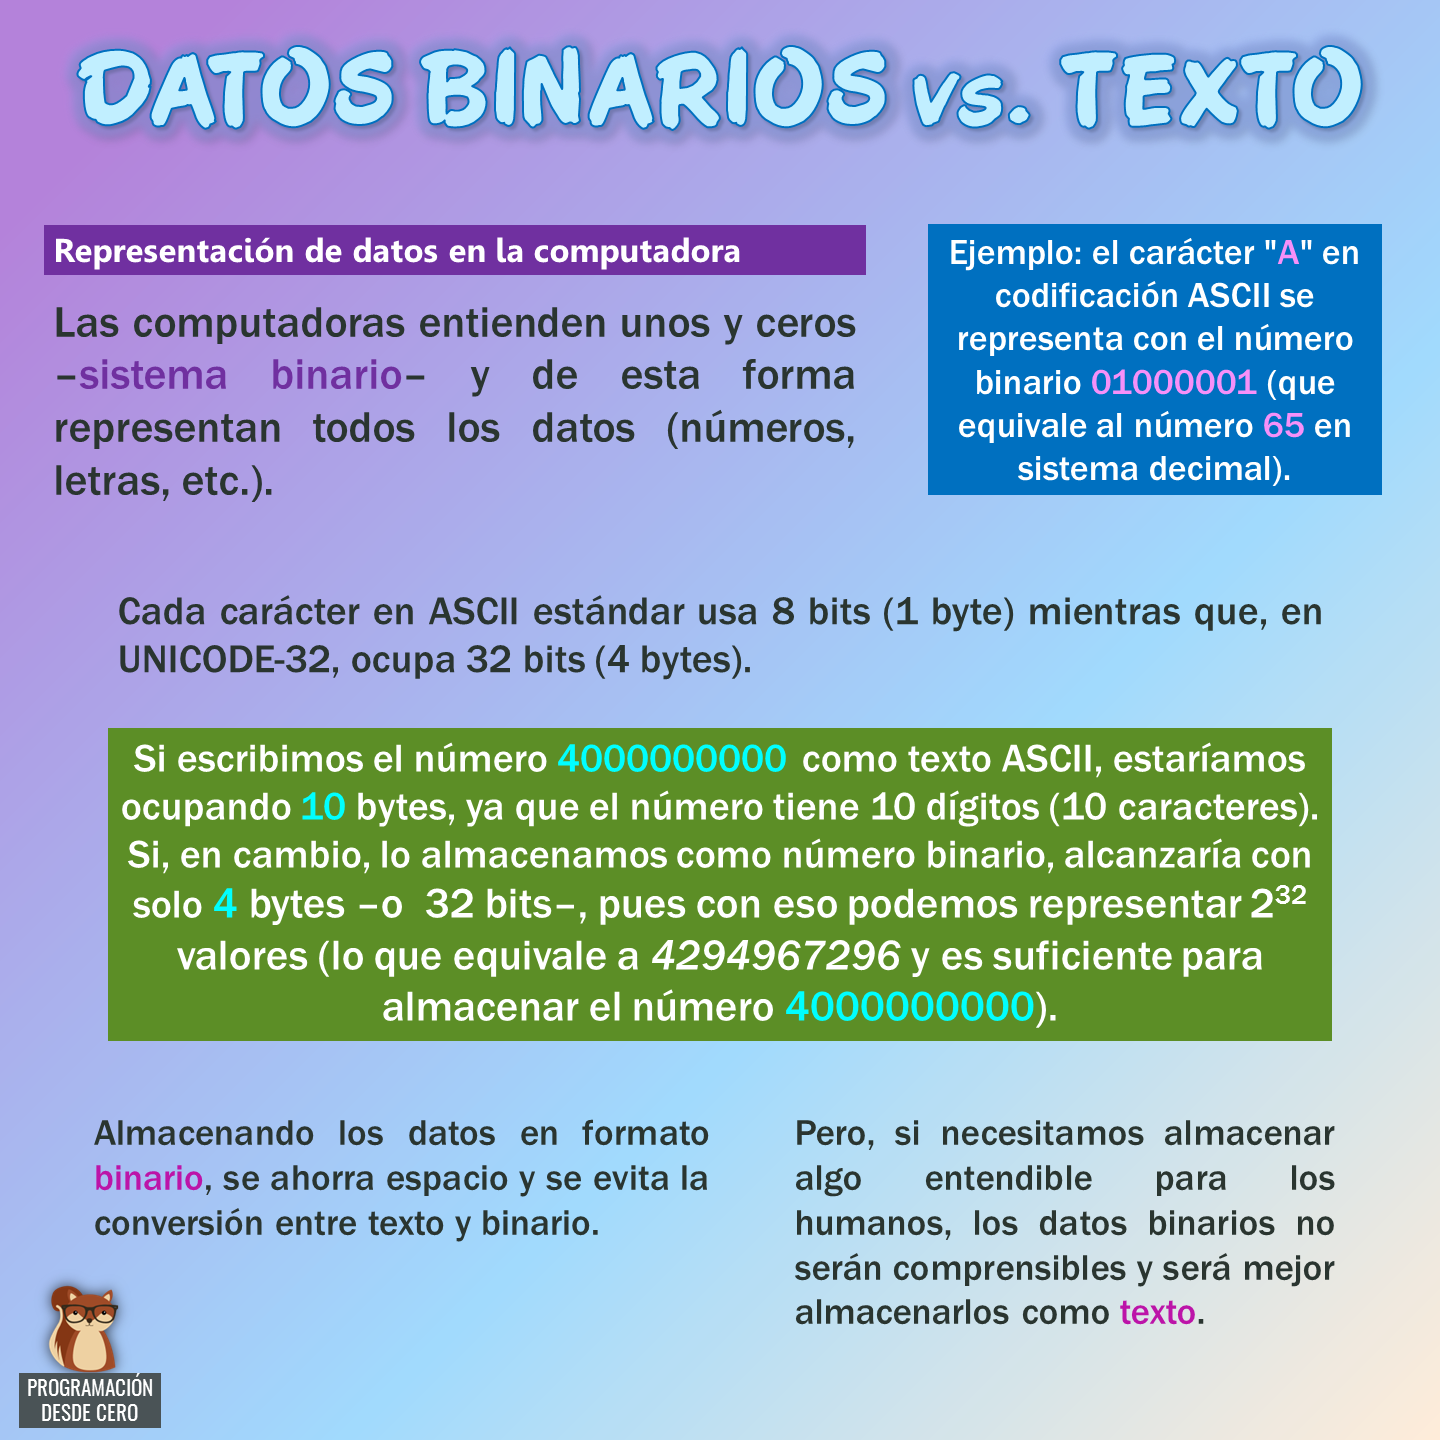 DATOS BINARIOS VS. TEXTO